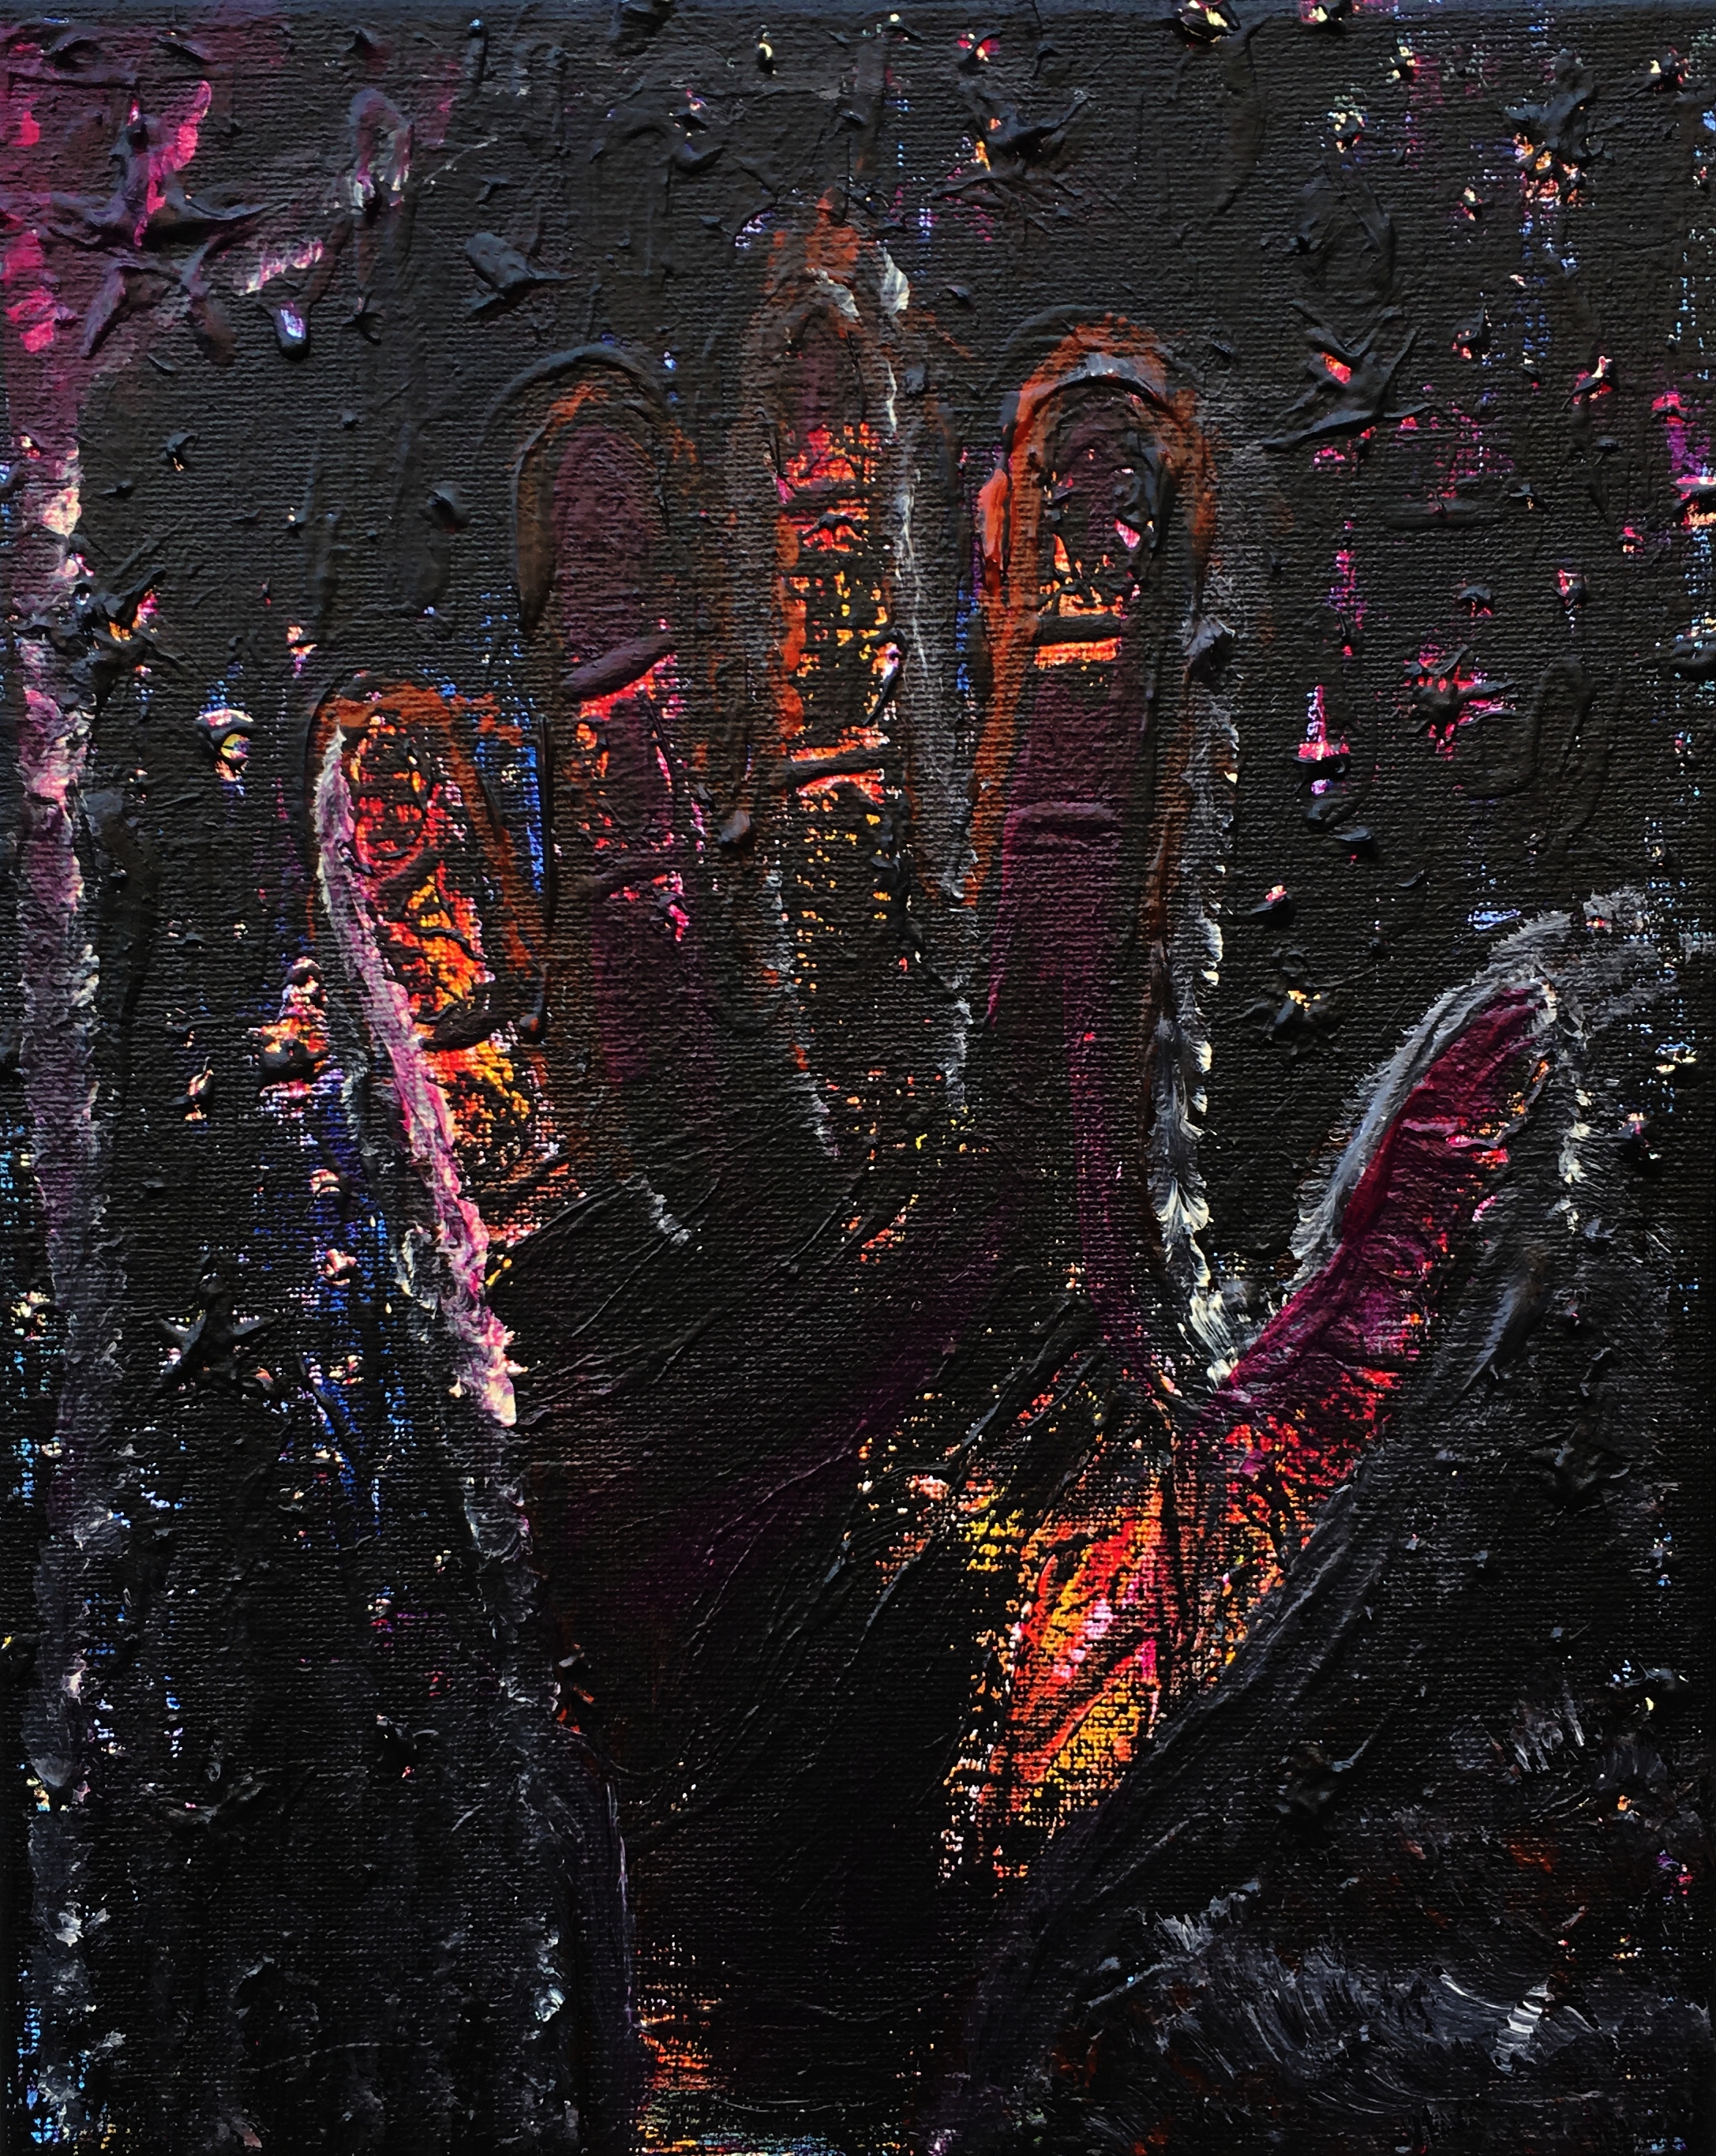 The Blackened Hand